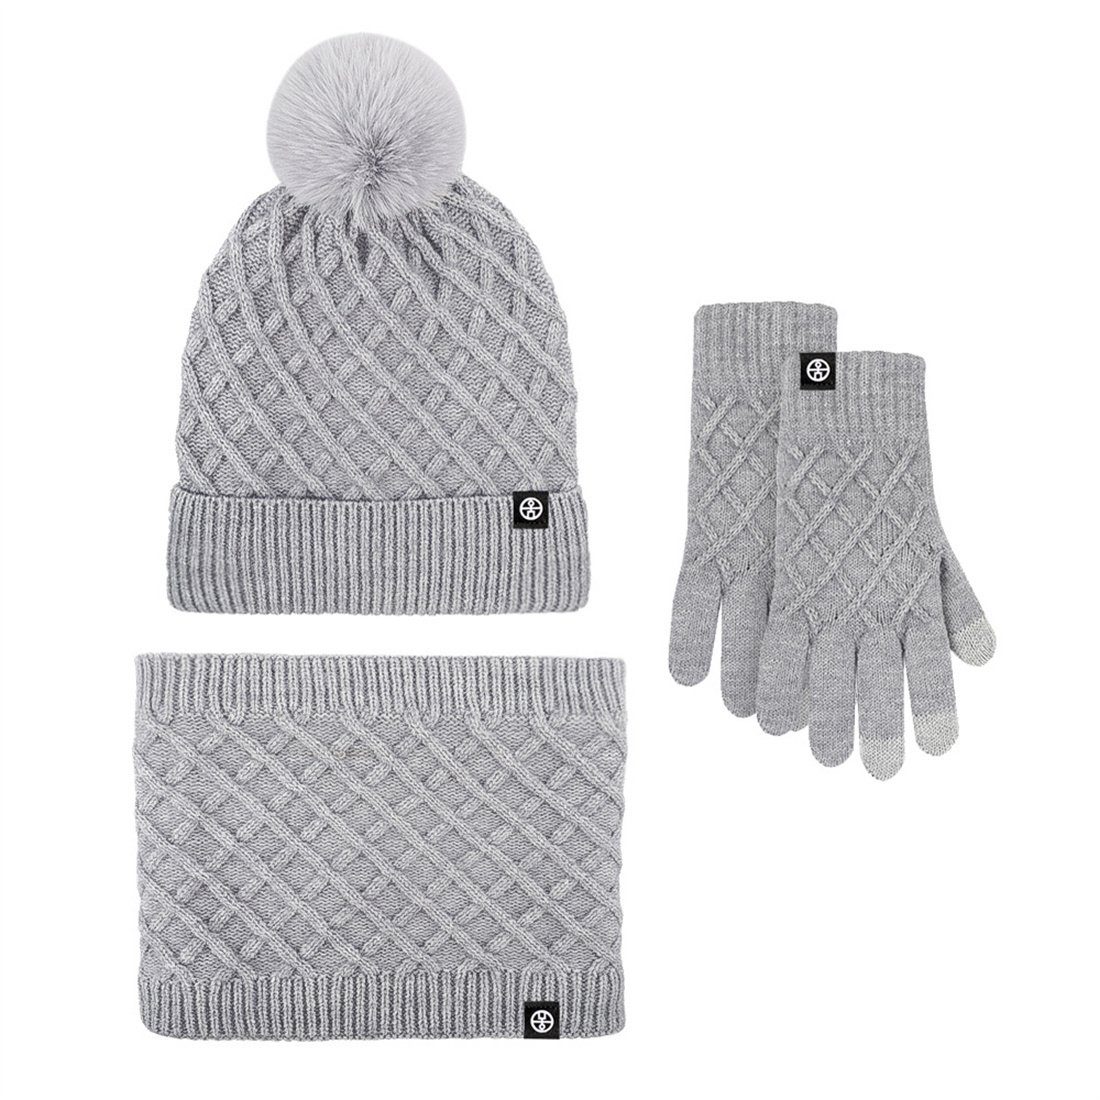 DÖRÖY Strickmütze Winter gepolstert Warm Mütze Schal Handschuhe 3 Stück, Warm Set Grau